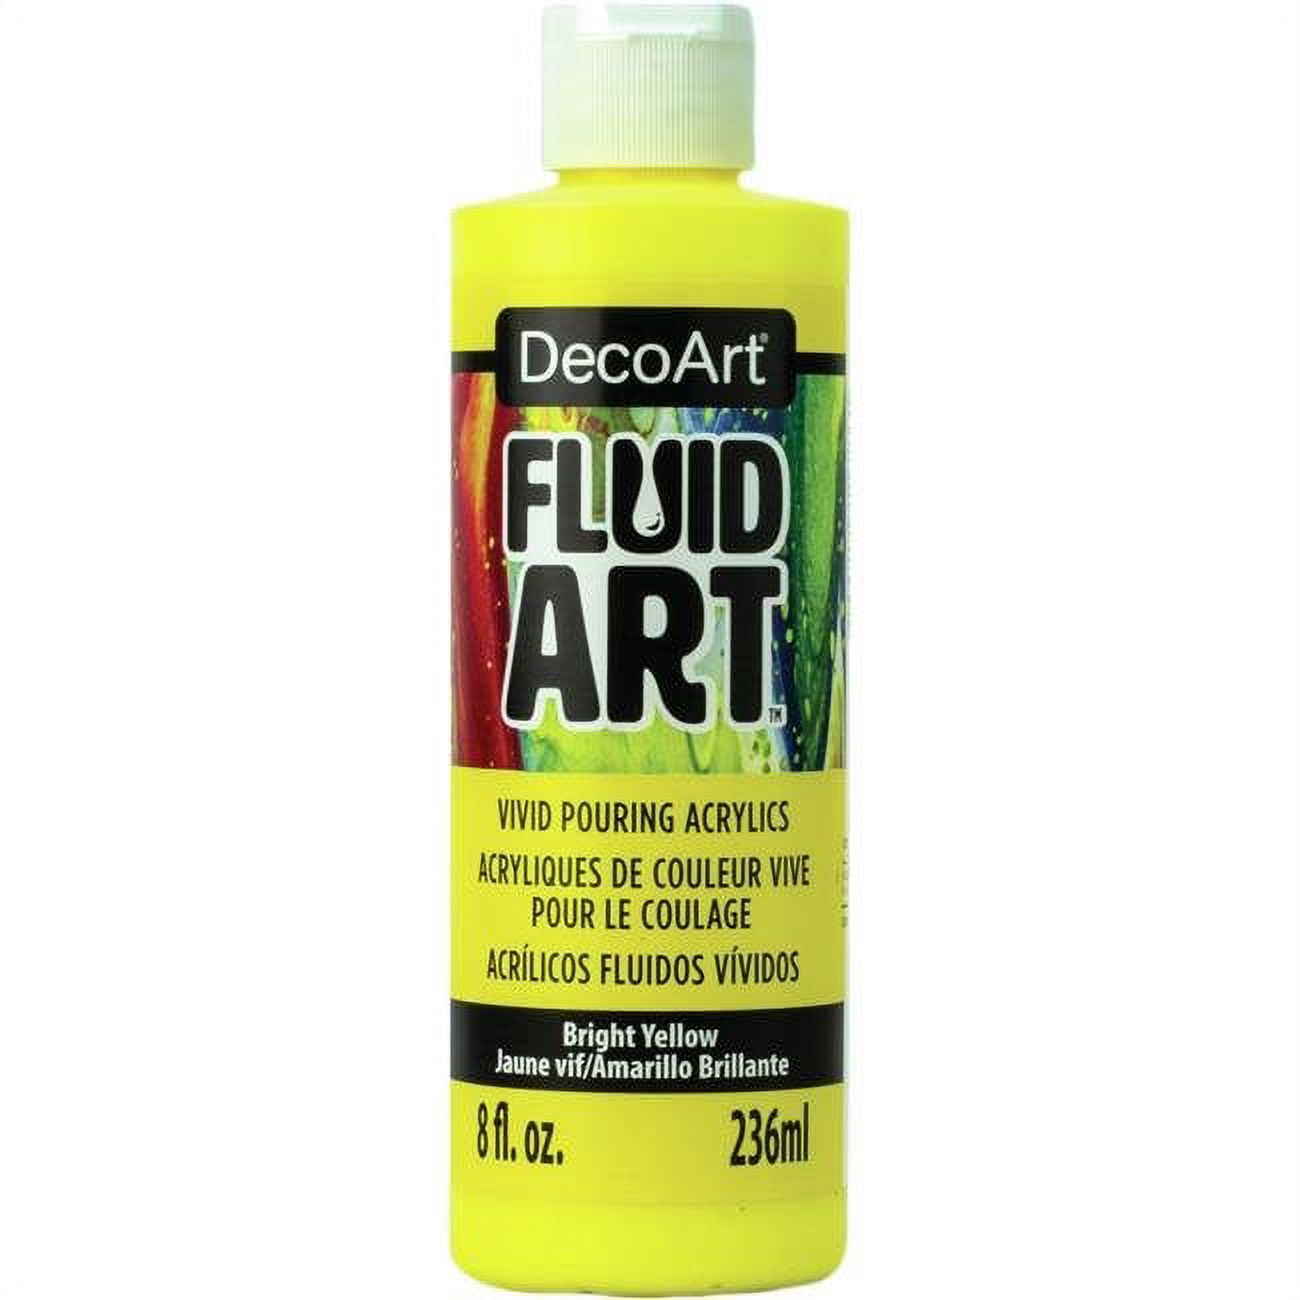 Fluid Art Ready To Pour Acrylics Neons - Neon Blue DFA104 8 oz